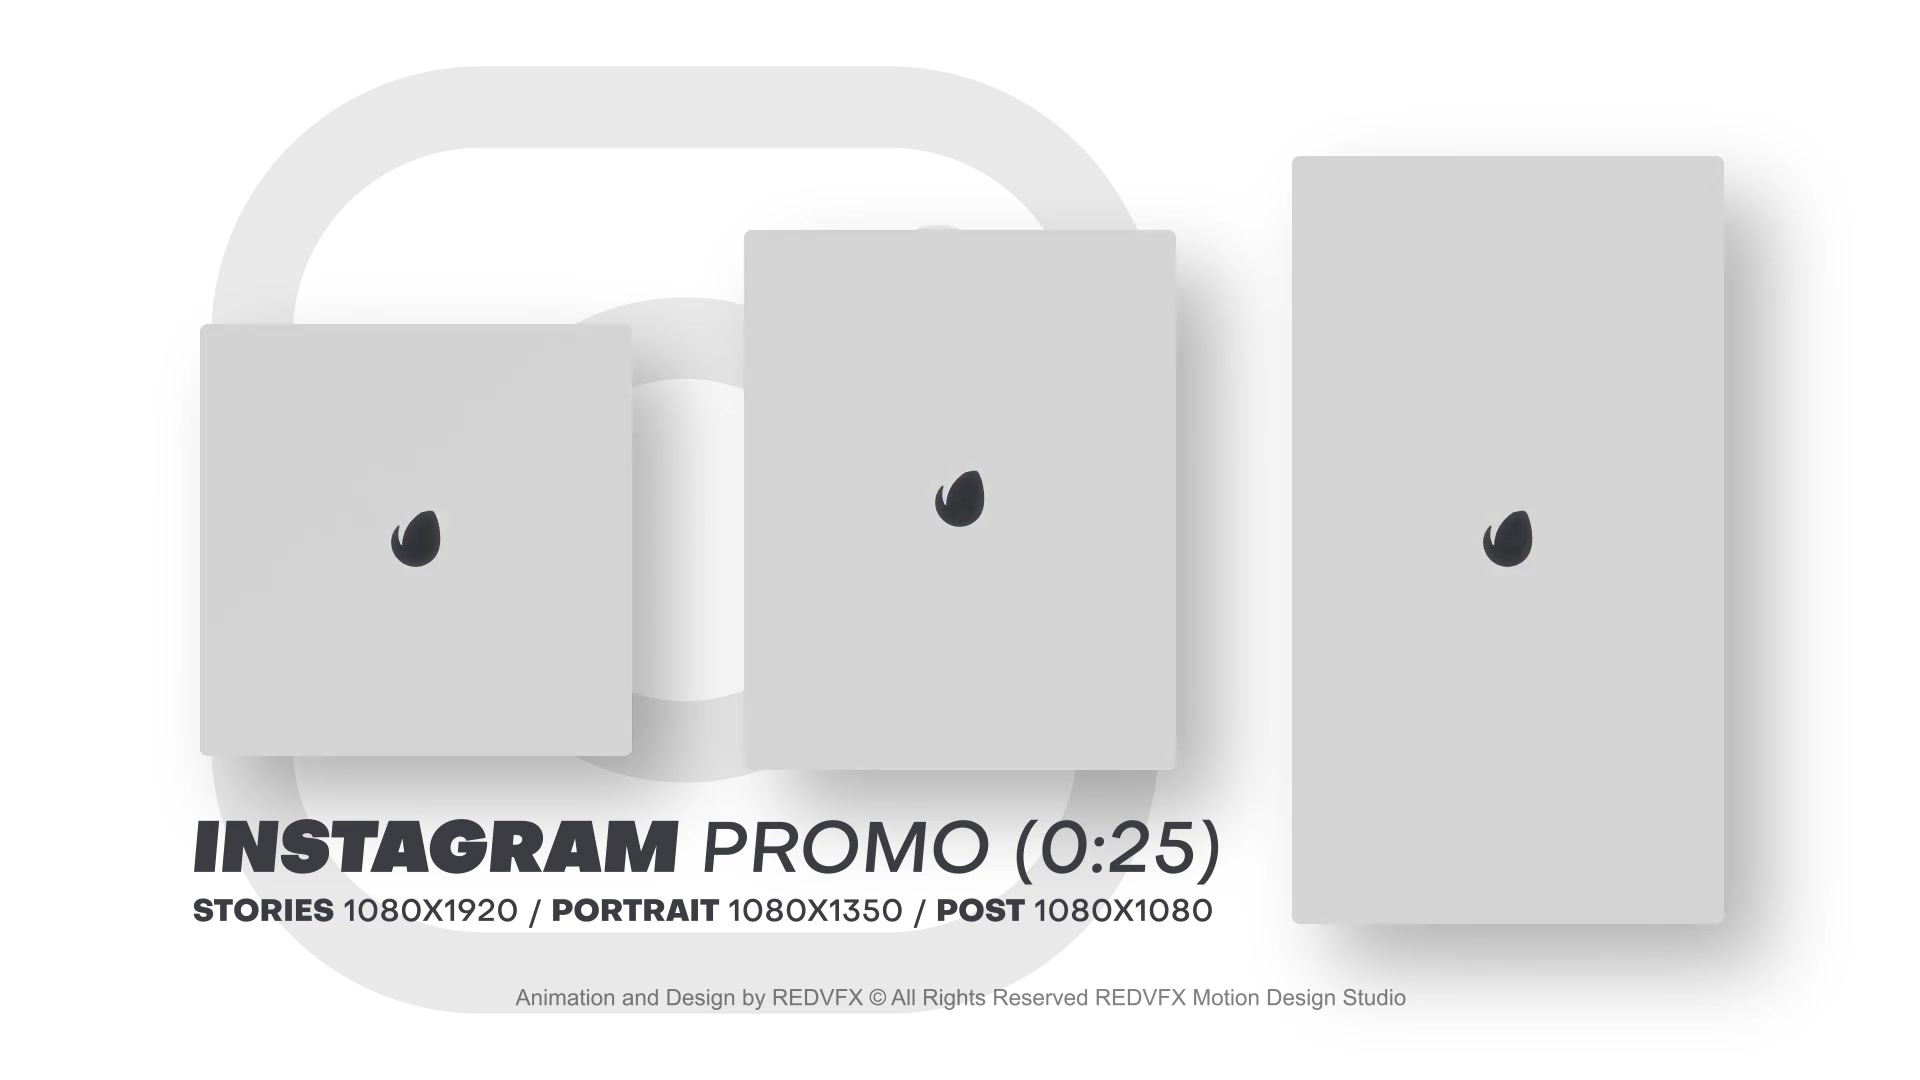 Instagram Promo for Premiere Pro Videohive 36478083 Premiere Pro Image 11